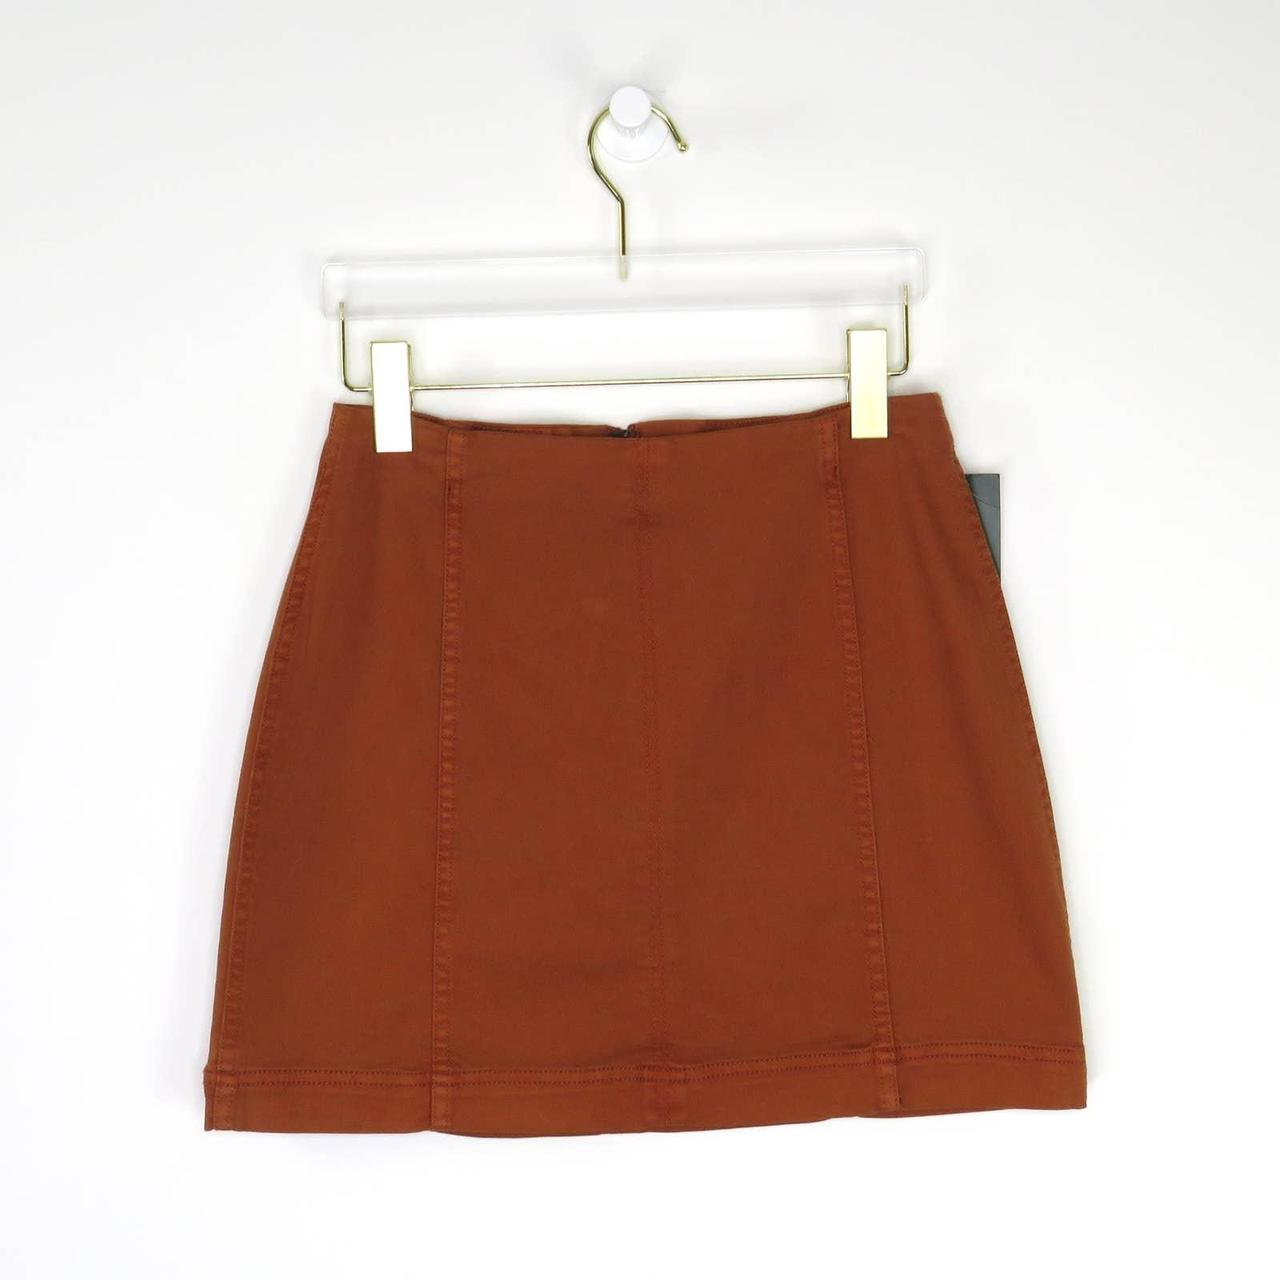 Wild Fable Burnt Orange Skirt. High Rise Mini Skirt,... - Depop